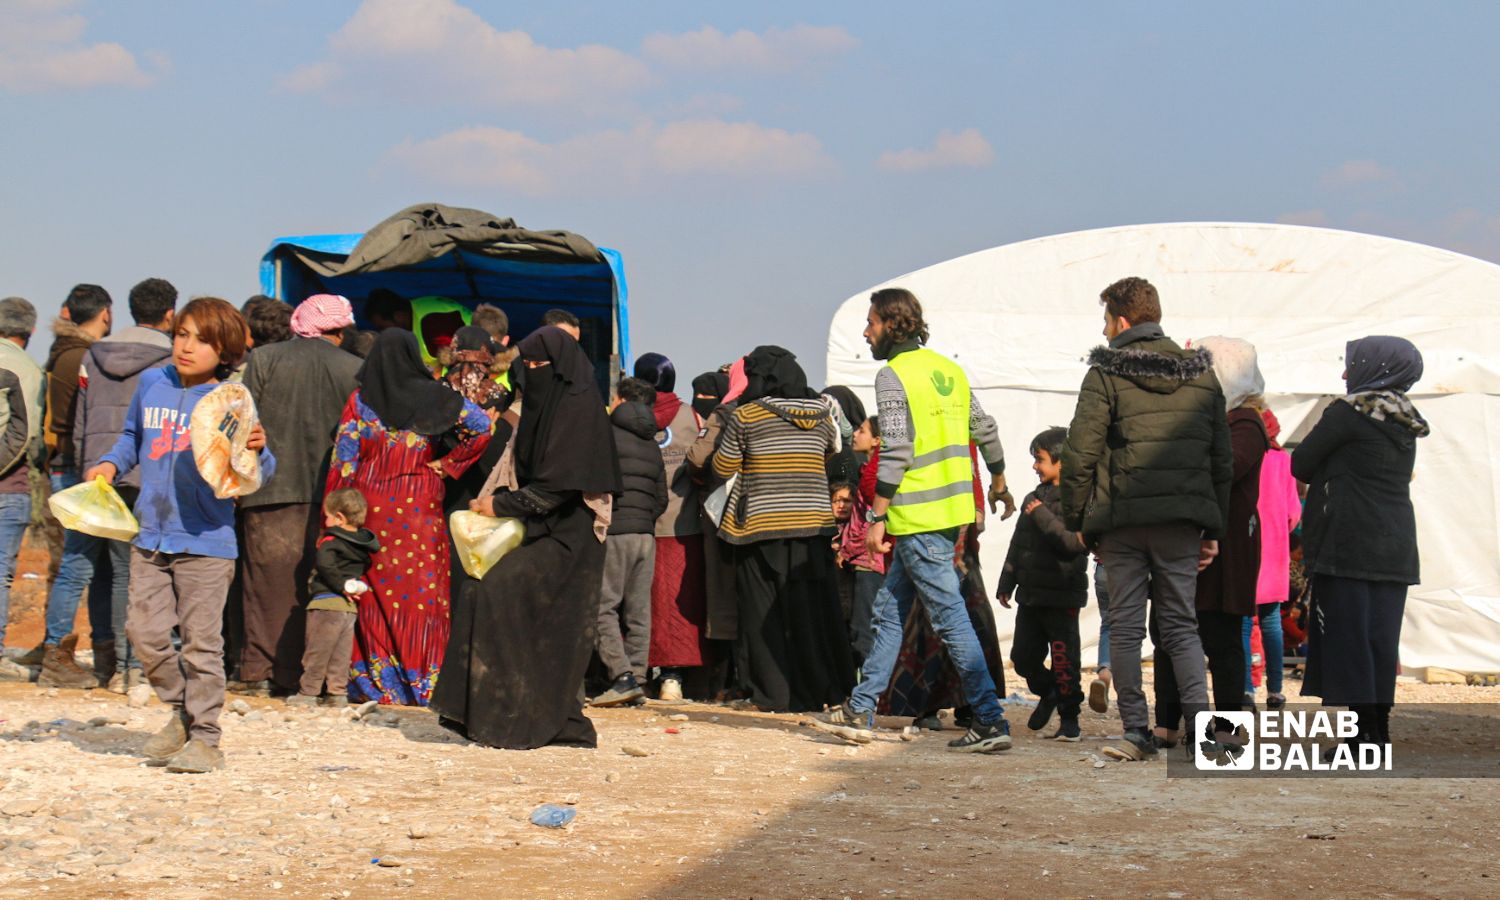 توزيع مساعدات على أهالي في بلدة جنديرس بريف حلب الشمالي متضررين من الزلزال الذي ضرب جنوبي تركيا ومناطق متفرقة في سوريا- 13 شباط 2023 (/ ديان جنباز)